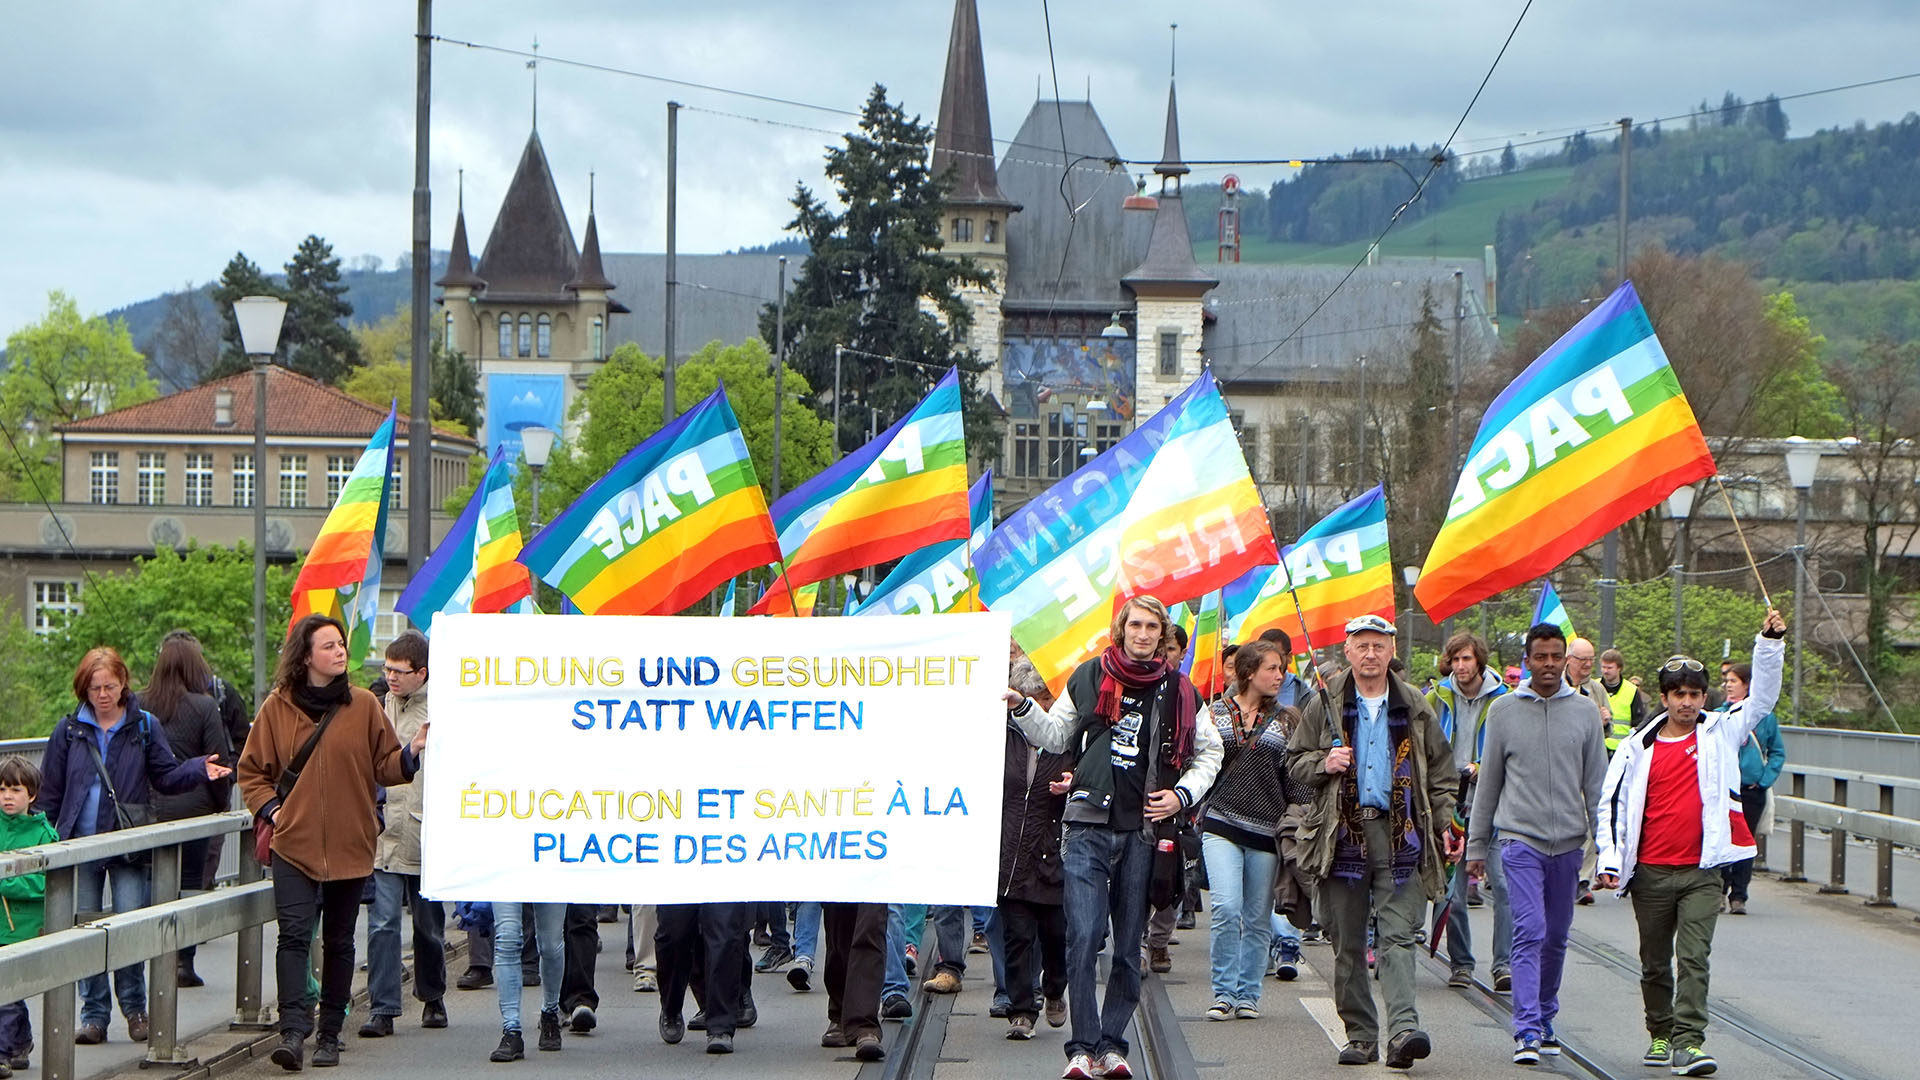 La Marche de Pâques avait réuni 450 personnes en 2014. (Photo: ostermarschbern.ch)